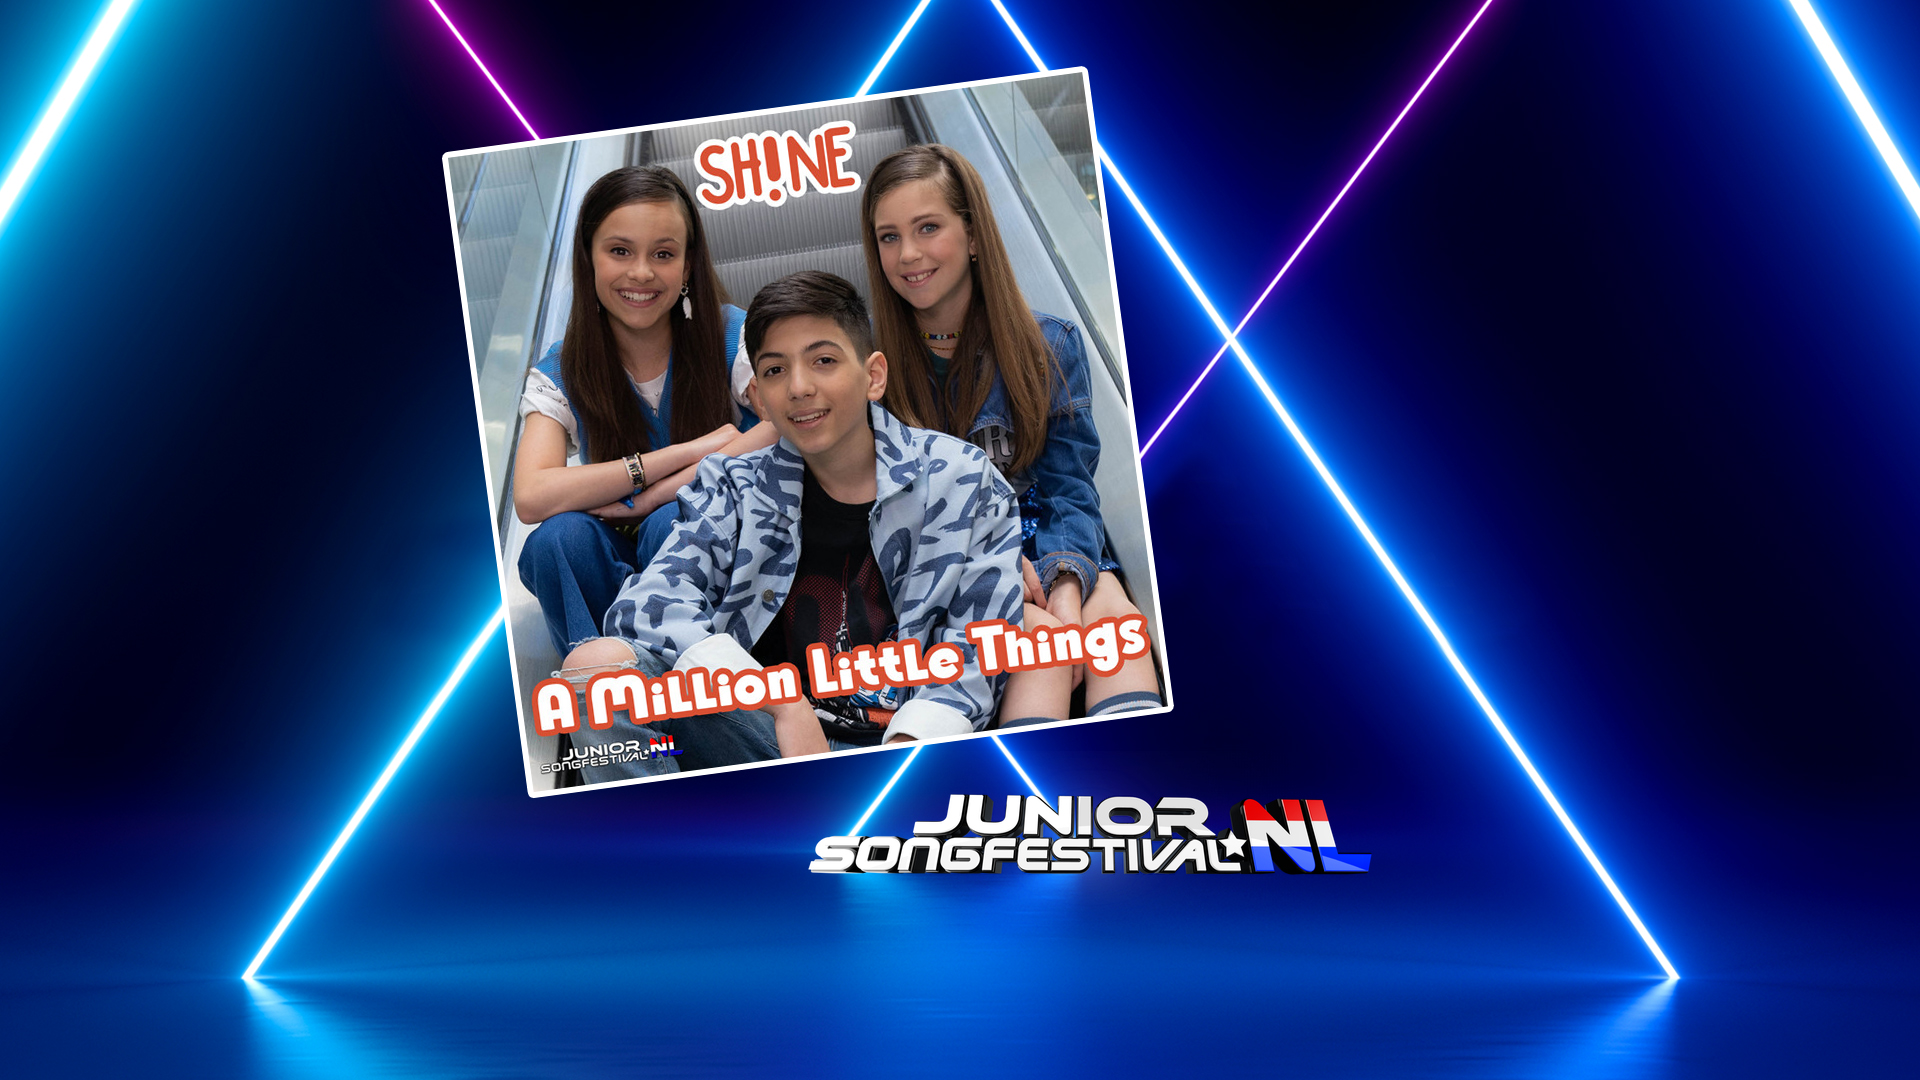 Países Bajos presenta “A Million Little Things”, la cuarta y última canción del Junior Songfestival 2021